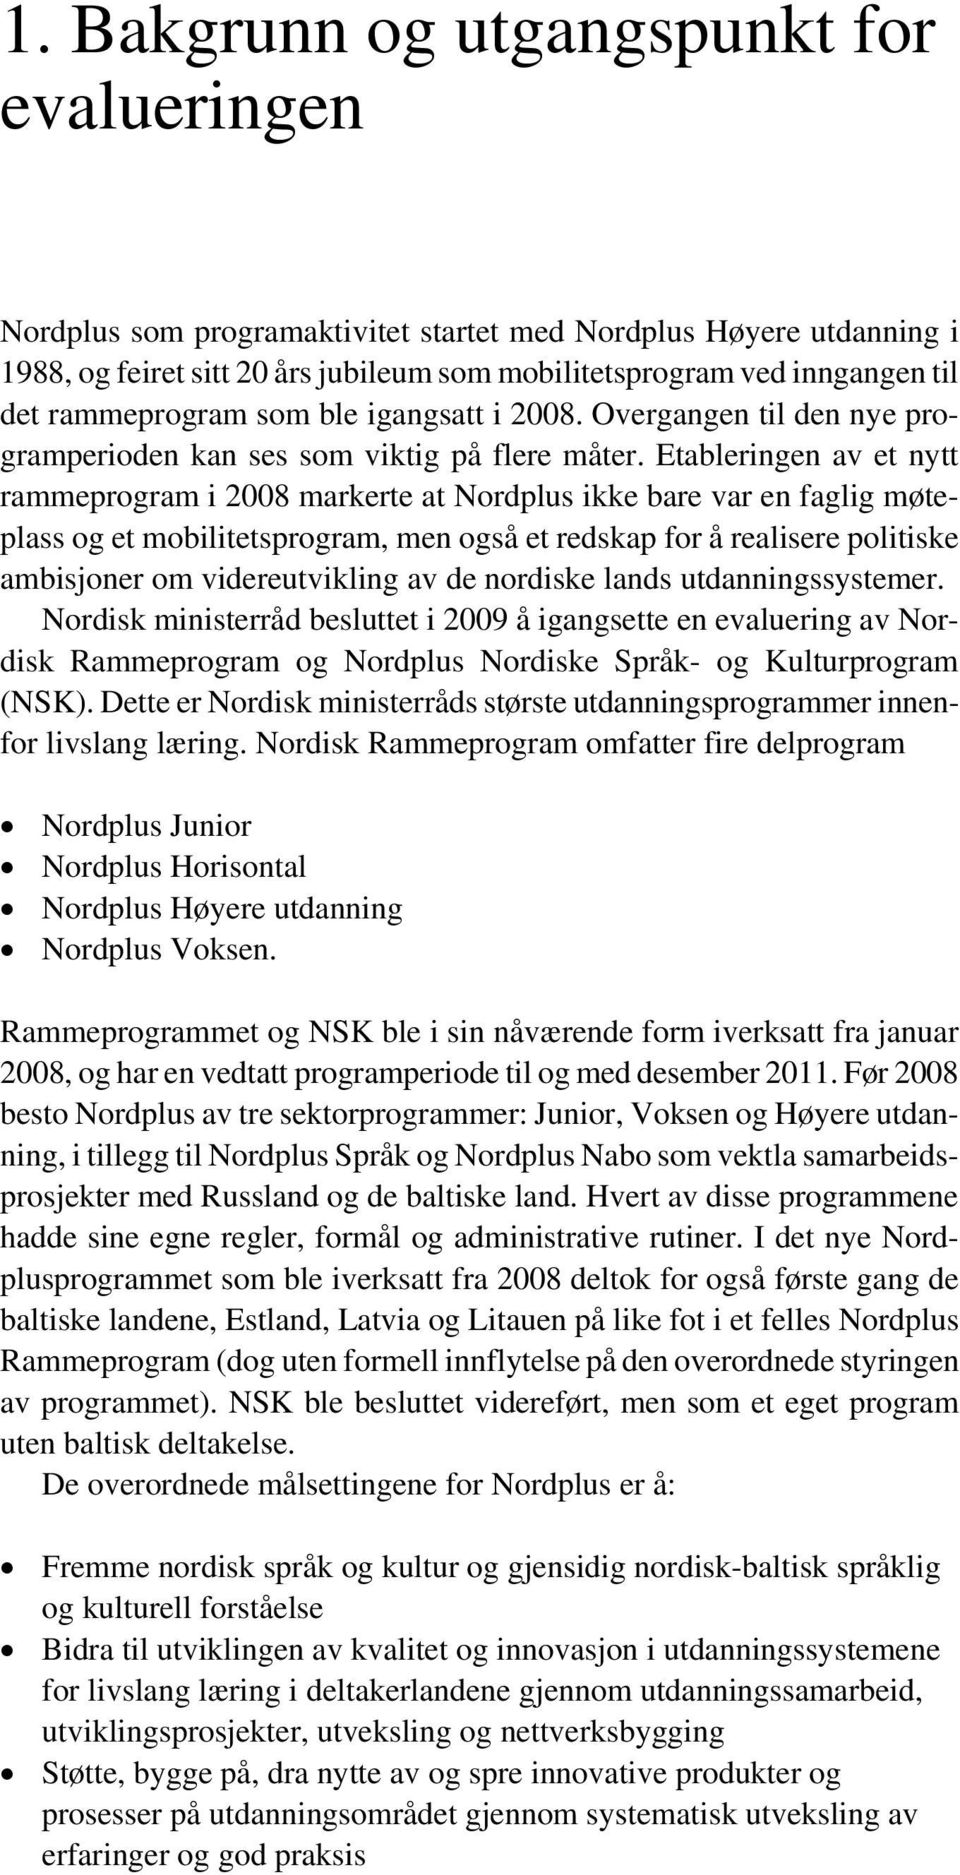 Etableringen av et nytt rammeprogram i 2008 markerte at Nordplus ikke bare var en faglig møteplass og et mobilitetsprogram, men også et redskap for å realisere politiske ambisjoner om videreutvikling